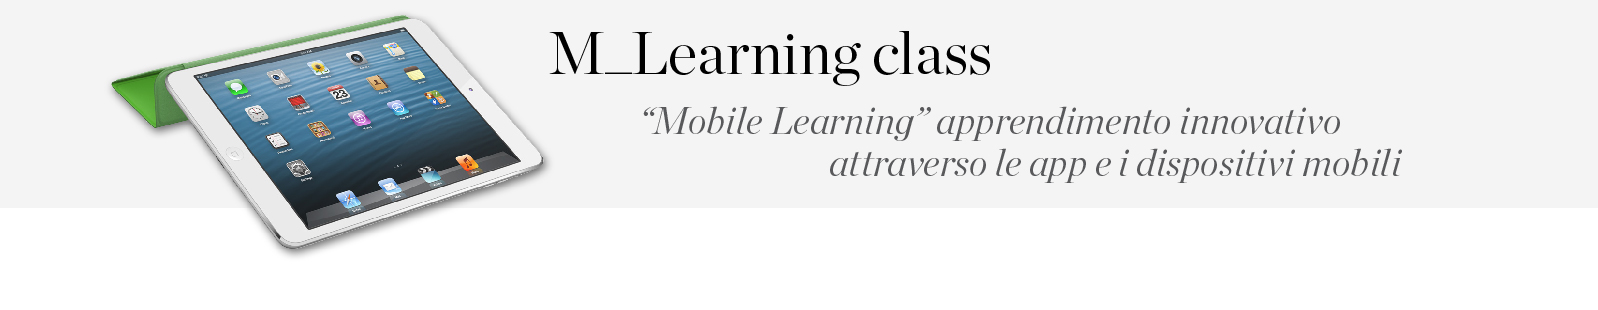 apprendimento innovativo attraverso le app e dispositivi mobili